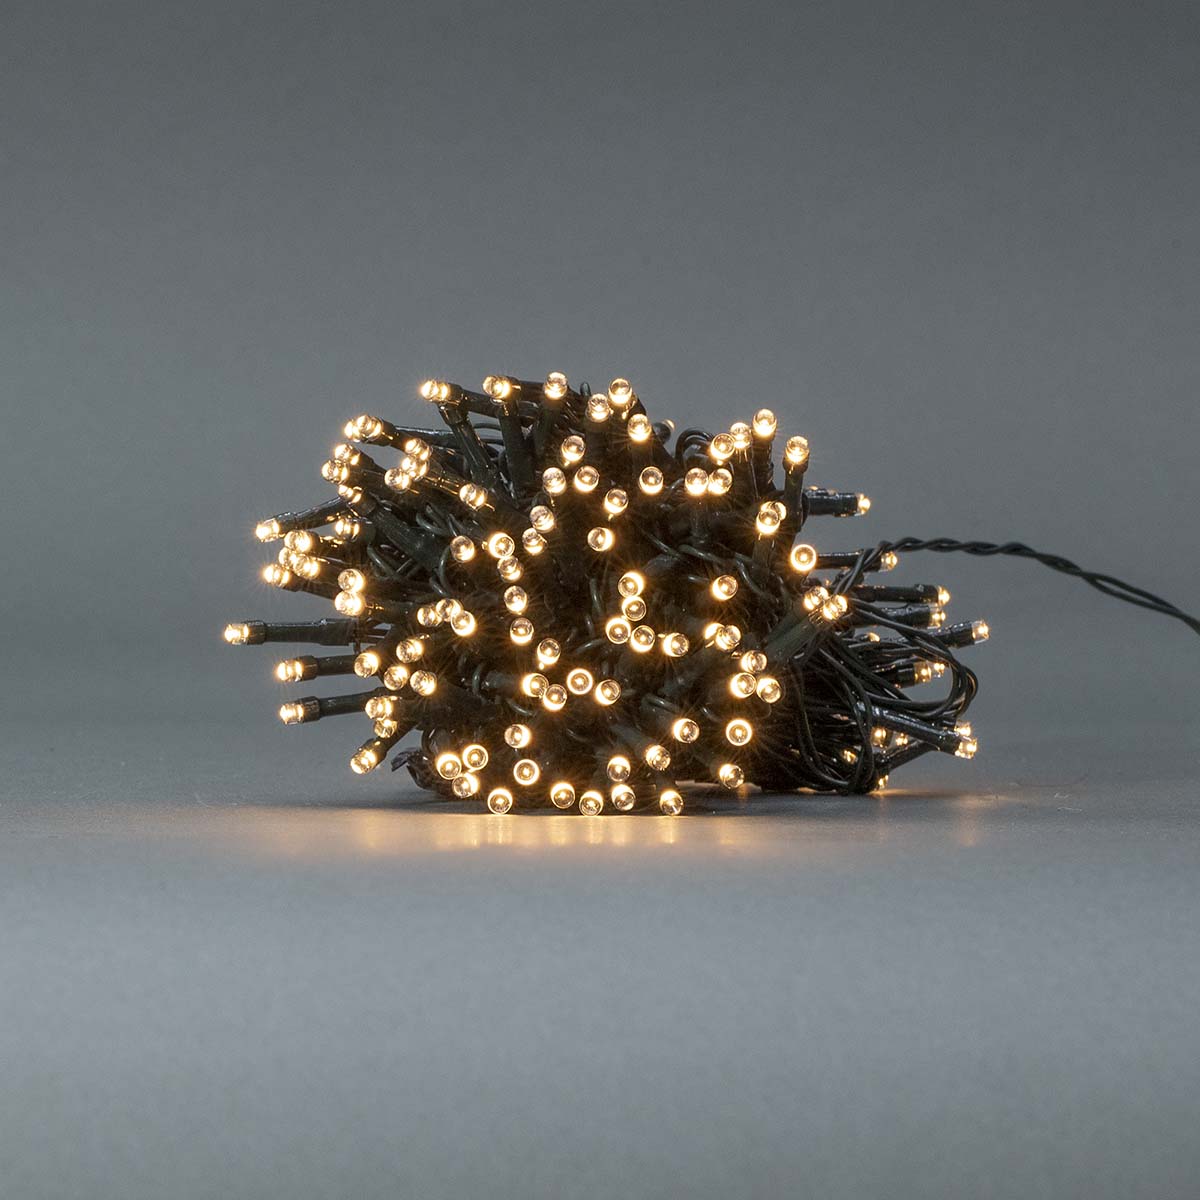 LED-Lichterkette warmweiss 192 LEDs 14,4m jetzt kaufen - Aktionskönig